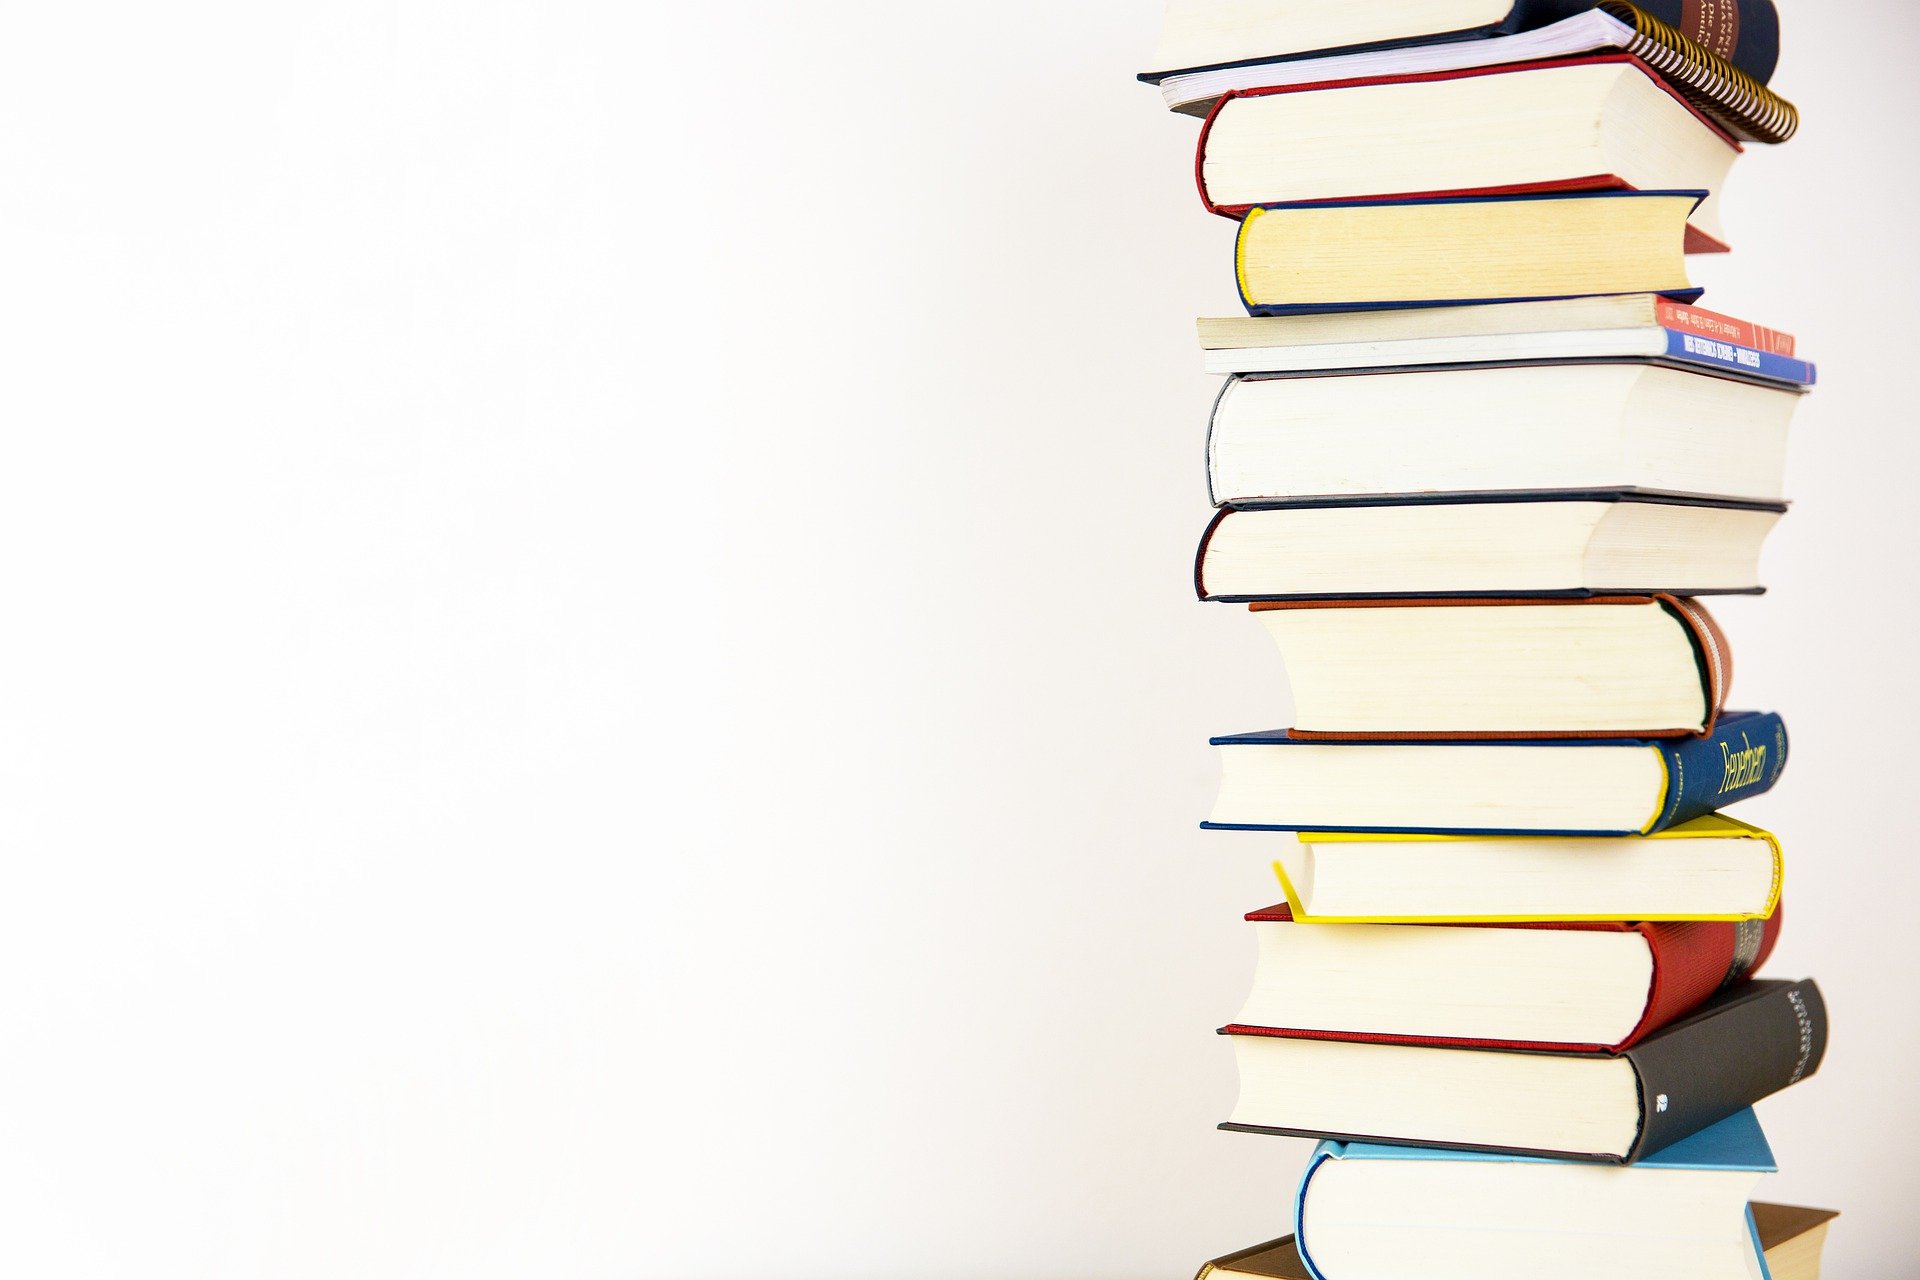 ΟΑΕΔ: Παράταση αιτήσεων βιβλιοπωλείων και εκδοτικών οίκων για το πρόγραμμα αγοράς βιβλίων